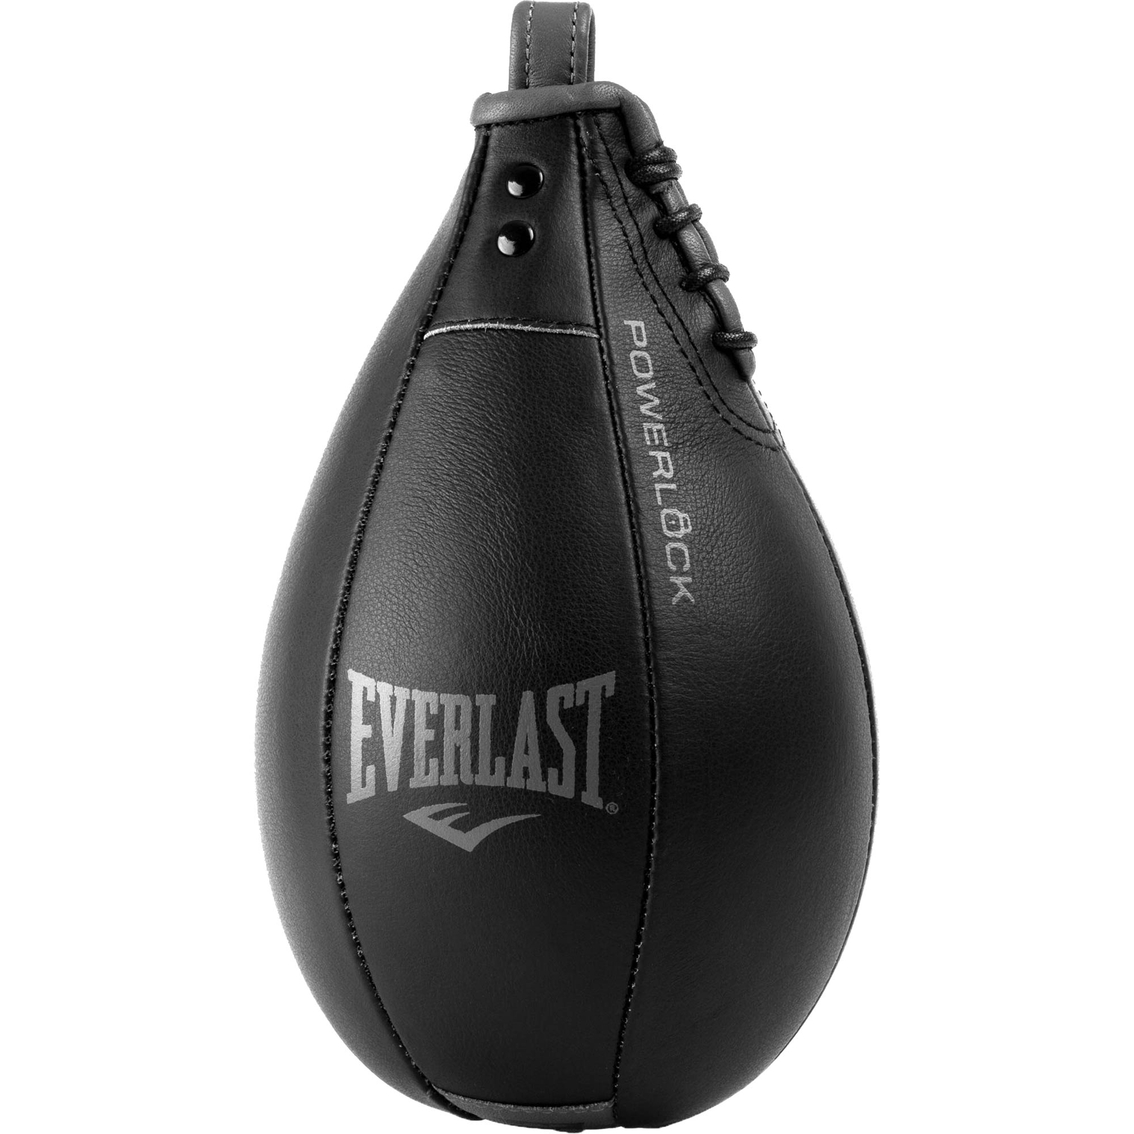 Everlast Powerlock Speed Bag Leather